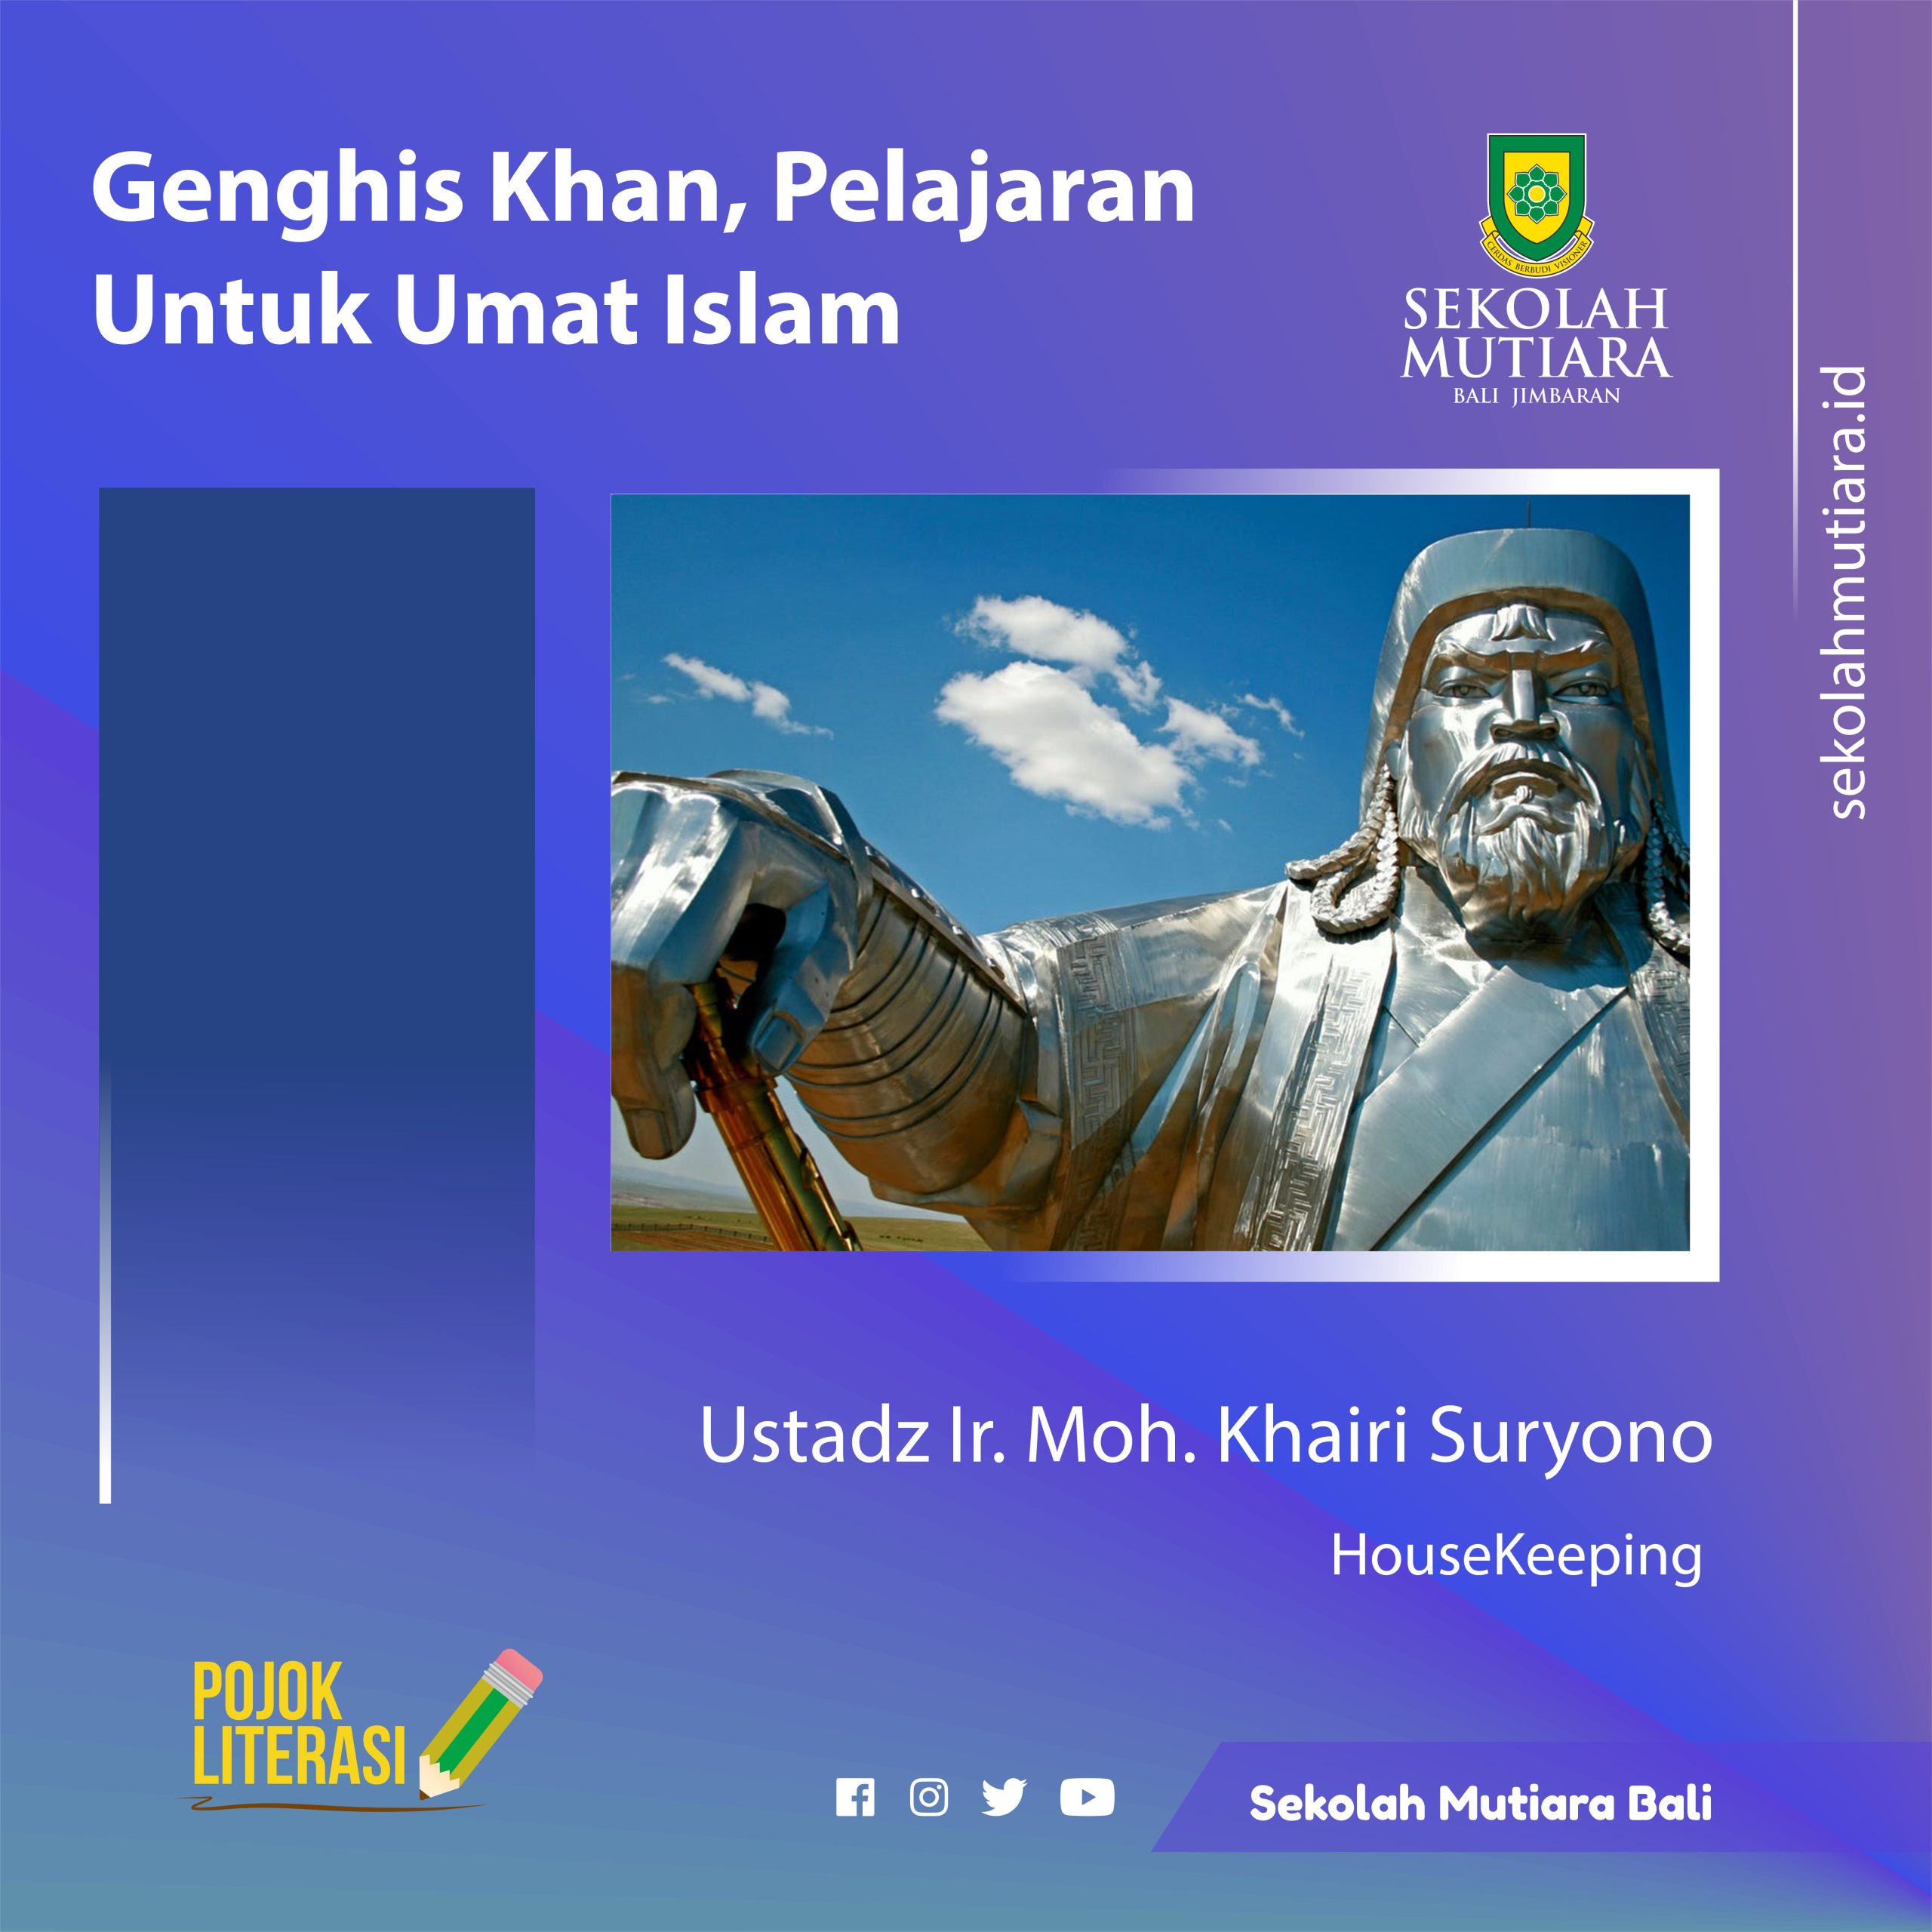 Genghis Khan, Pelajaran Untuk Umat Islam